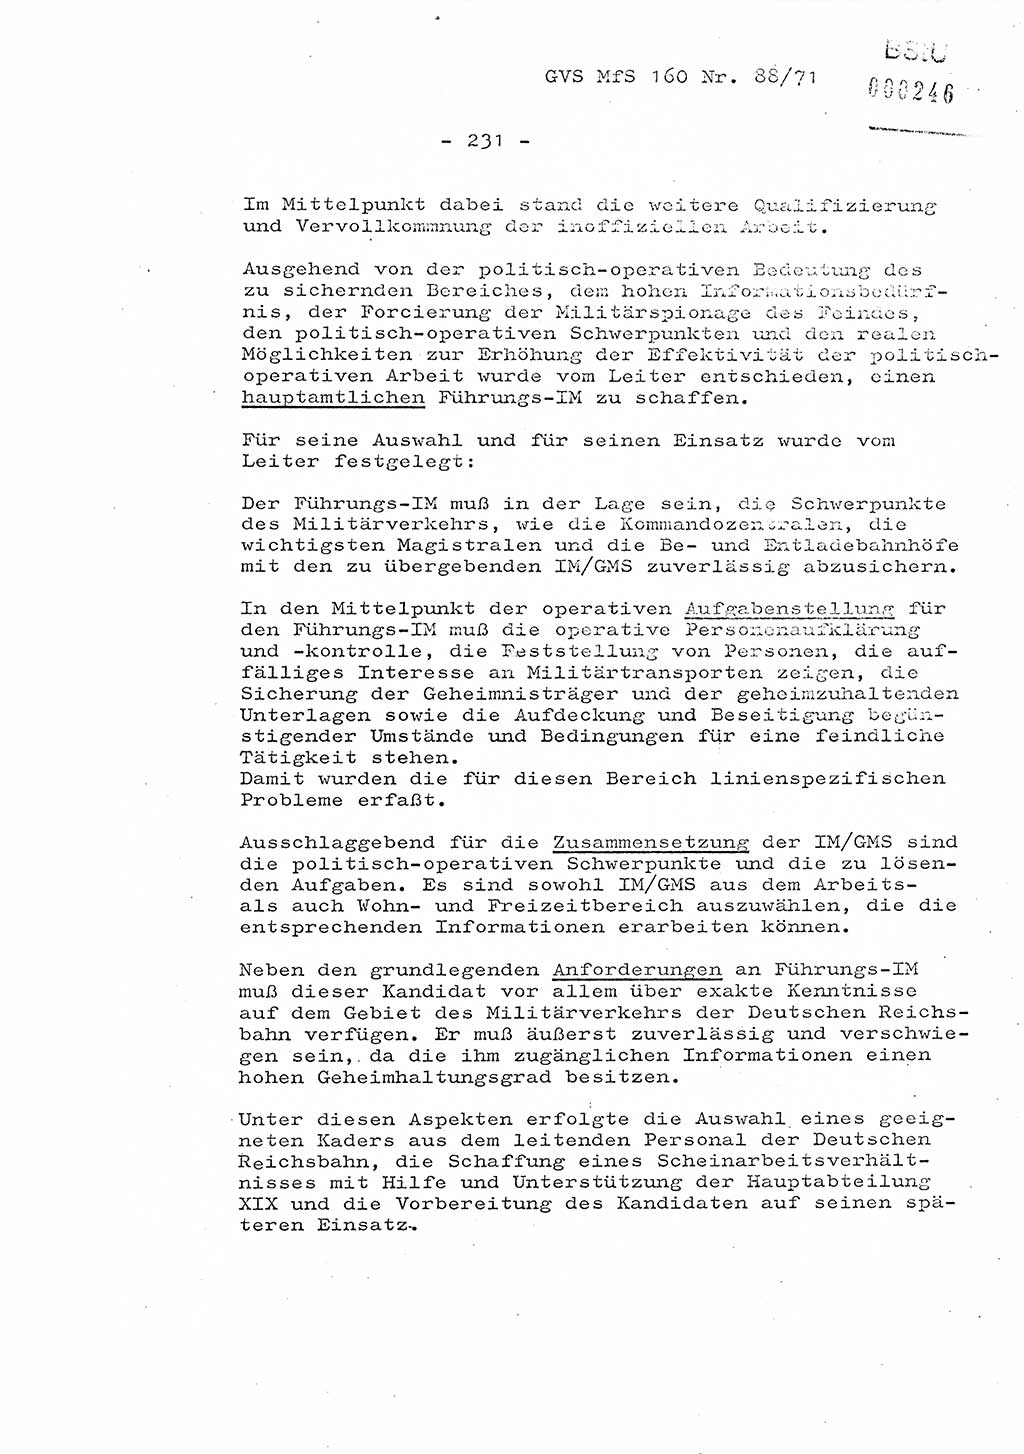 Dissertation Oberstleutnant Josef Schwarz (BV Schwerin), Major Fritz Amm (JHS), Hauptmann Peter Gräßler (JHS), Ministerium für Staatssicherheit (MfS) [Deutsche Demokratische Republik (DDR)], Juristische Hochschule (JHS), Geheime Verschlußsache (GVS) 160-88/71, Potsdam 1972, Seite 231 (Diss. MfS DDR JHS GVS 160-88/71 1972, S. 231)